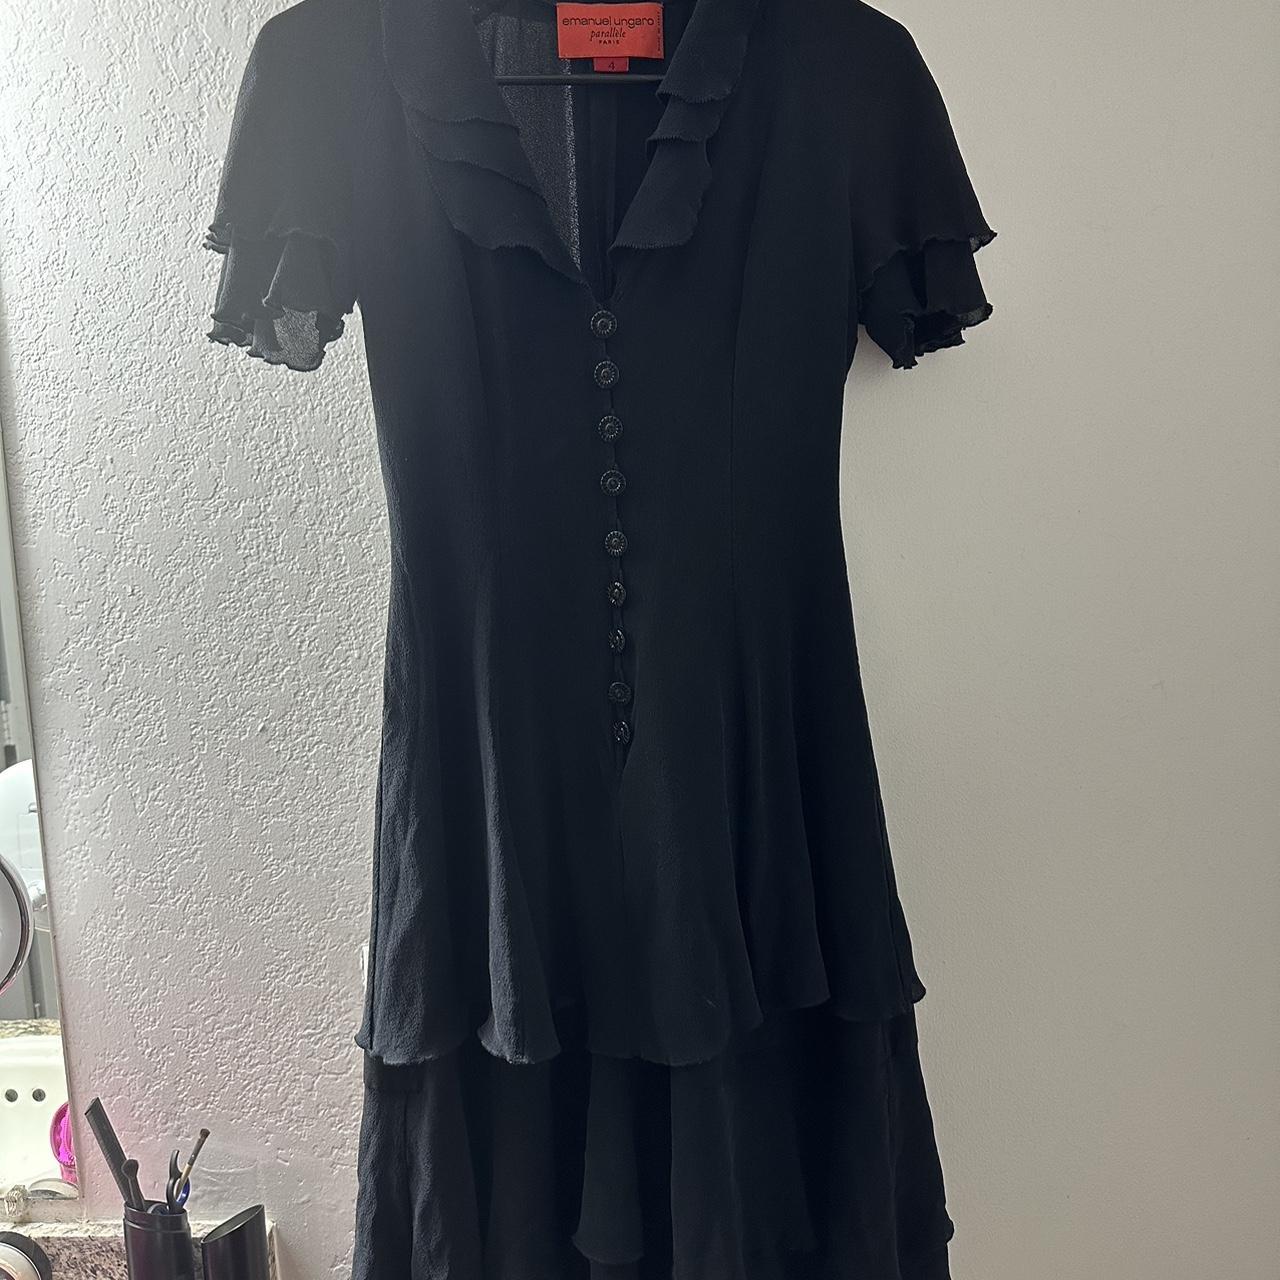 Emanuel Ungaro Women's Black Dress